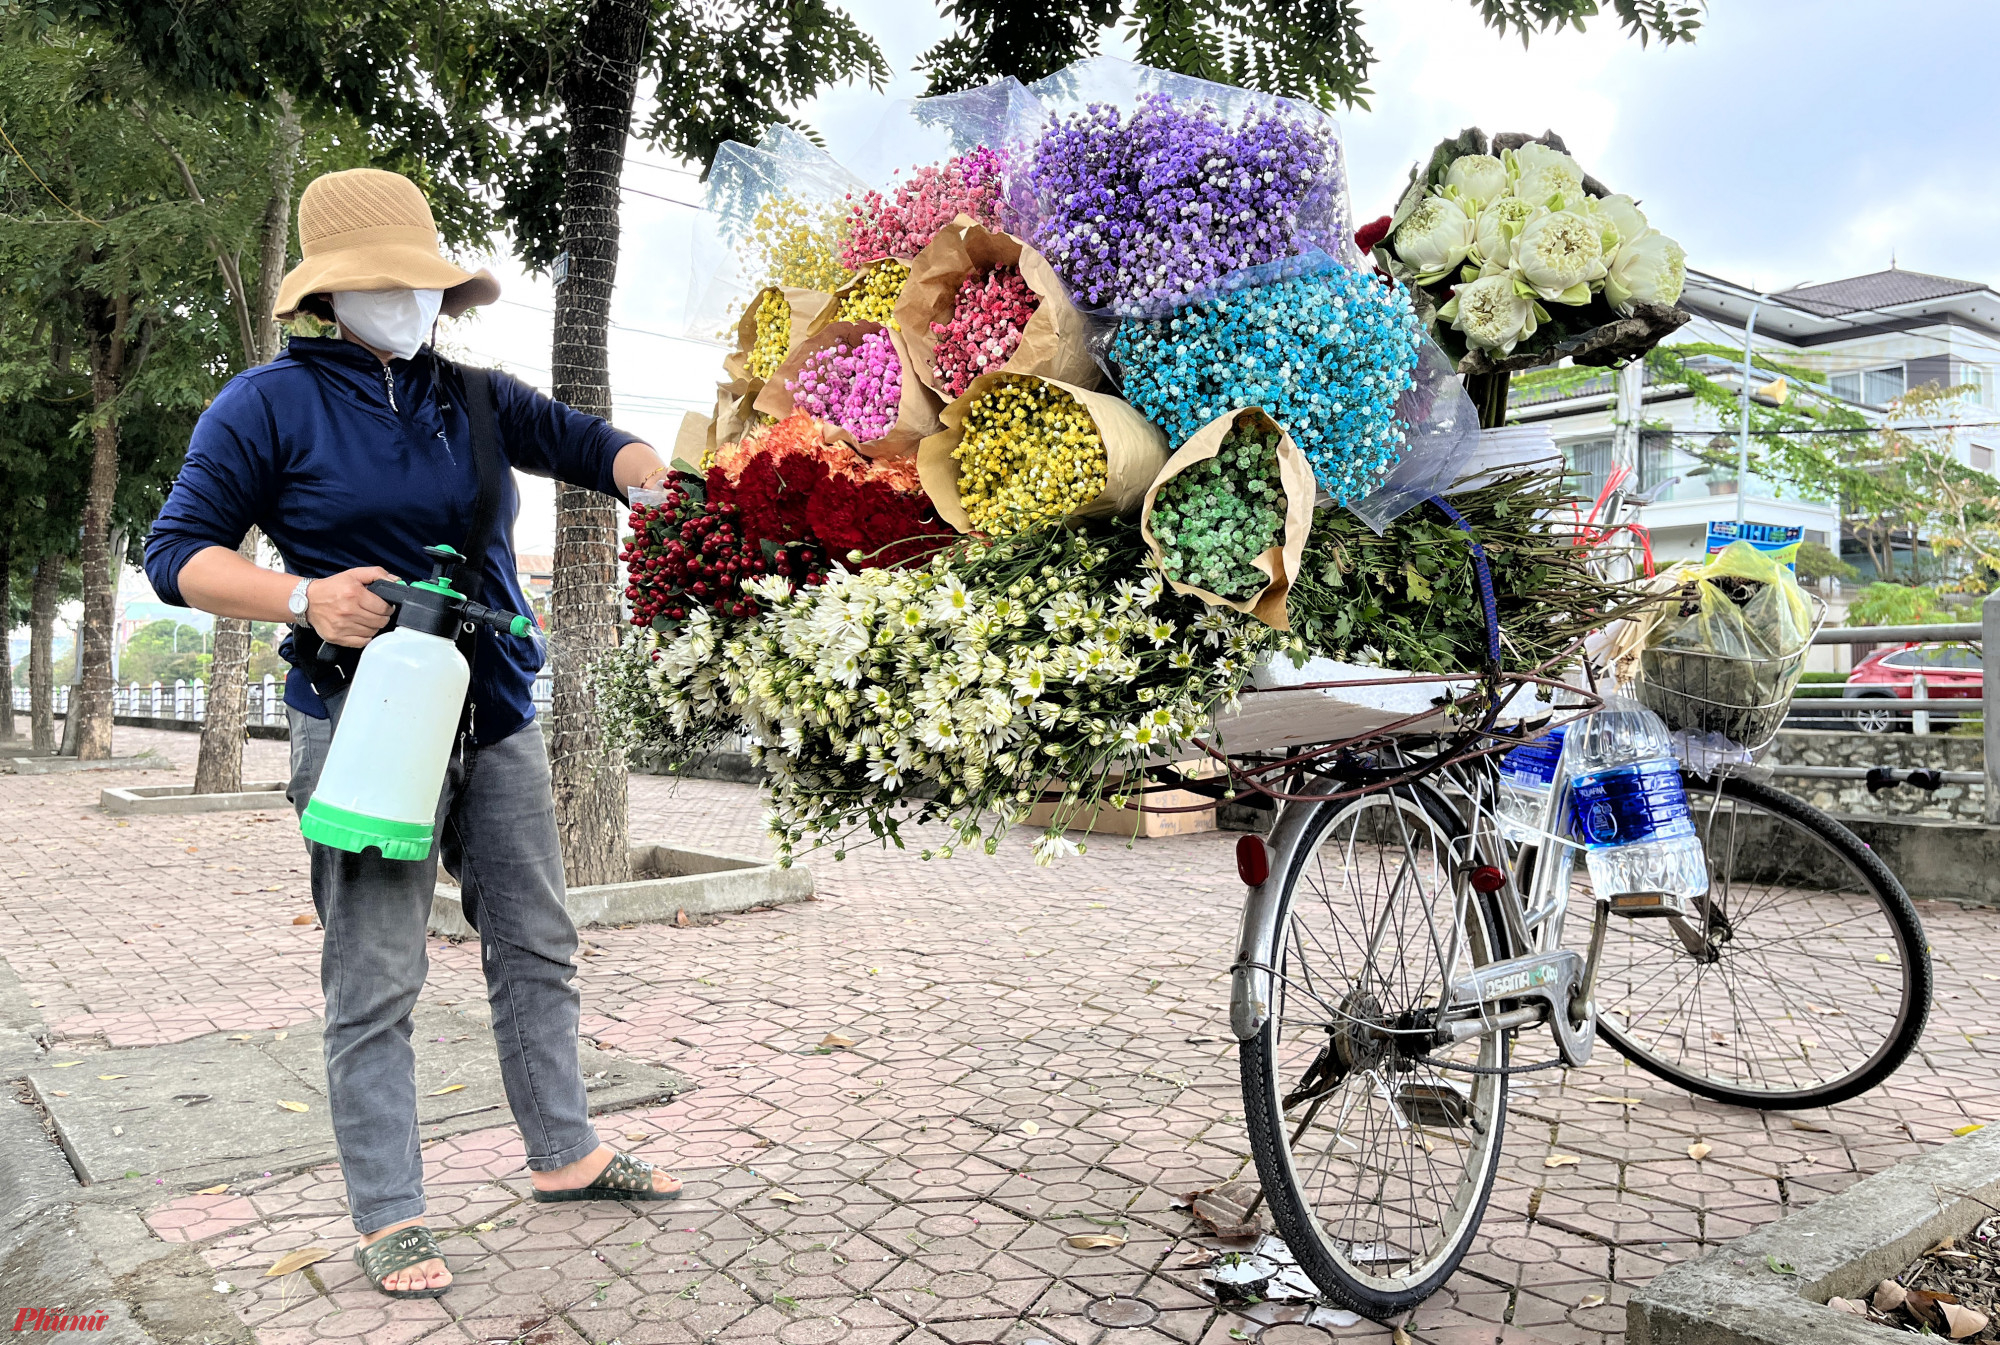 Phần lớn những chiếc xe đạp này đều được trang trí bằng các loại hoa như: Hoa sen, cúc hoạ mi, hướng dương, hoa sao… Tất cả đều được nhập về từ Đà Lạt.